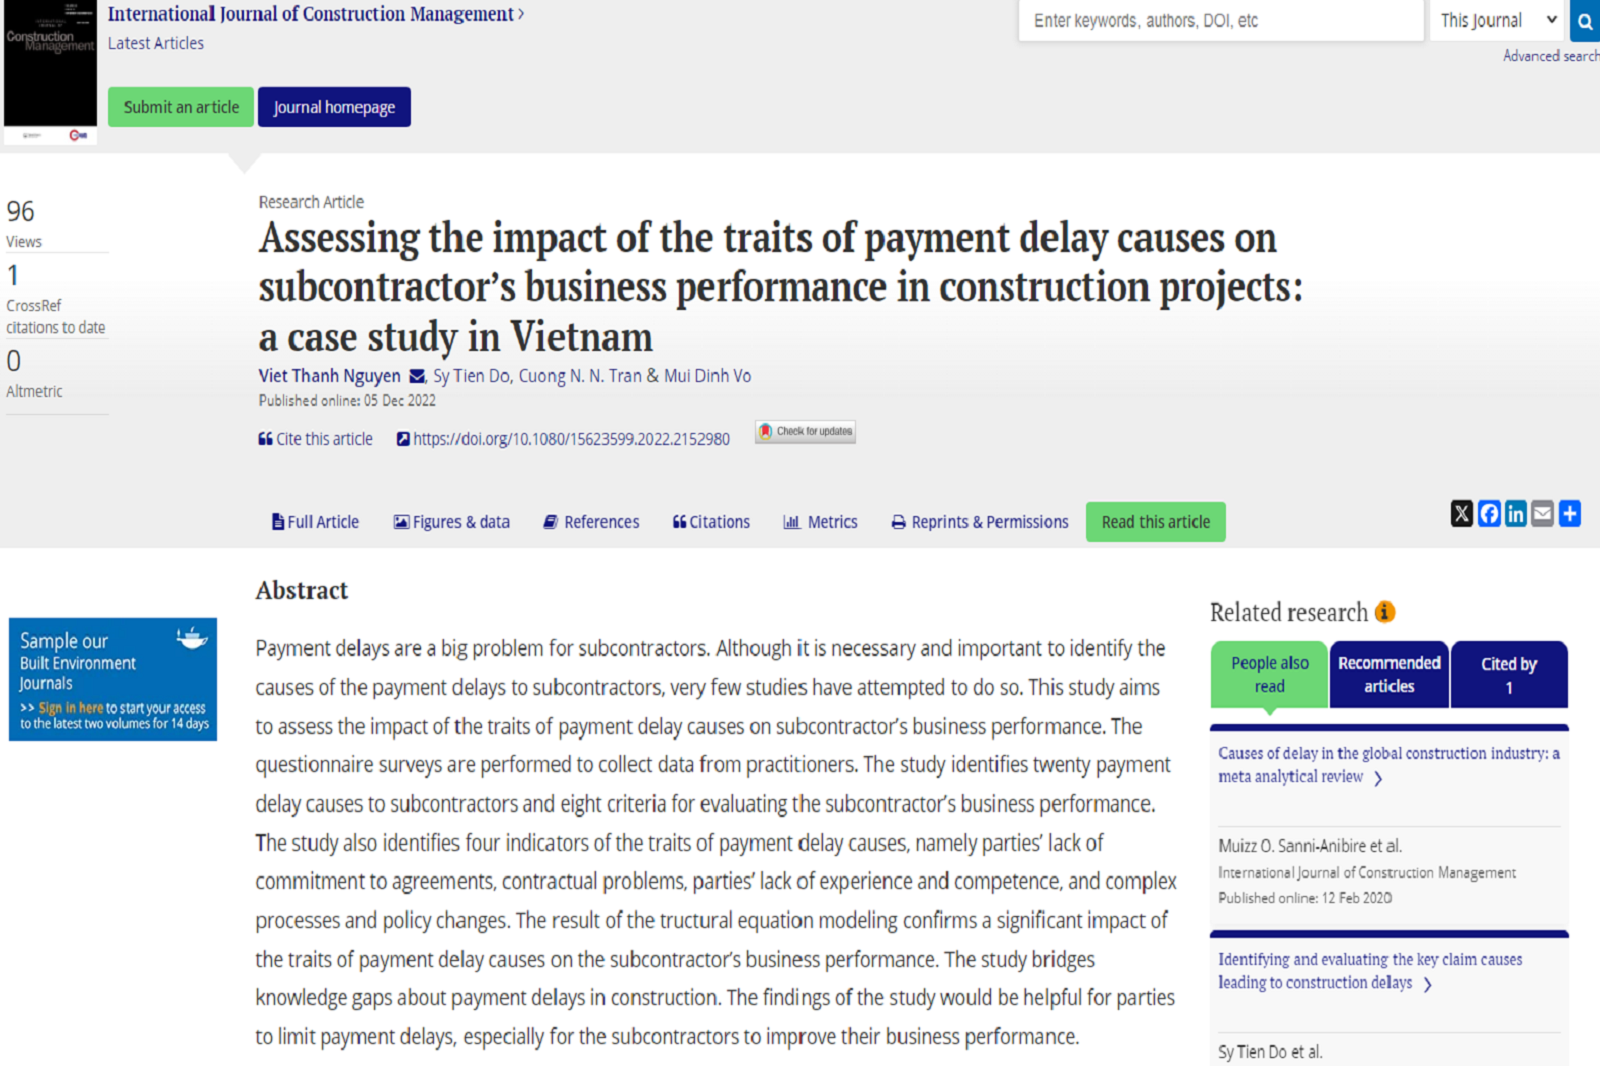 Đánh giá tác động của đặc điểm nguyên nhân chậm thanh toán đến hiệu quả kinh doanh của nhà thầu phụ trong các dự án xây dựng: Nghiên cứu trường hợp ở Việt Nam